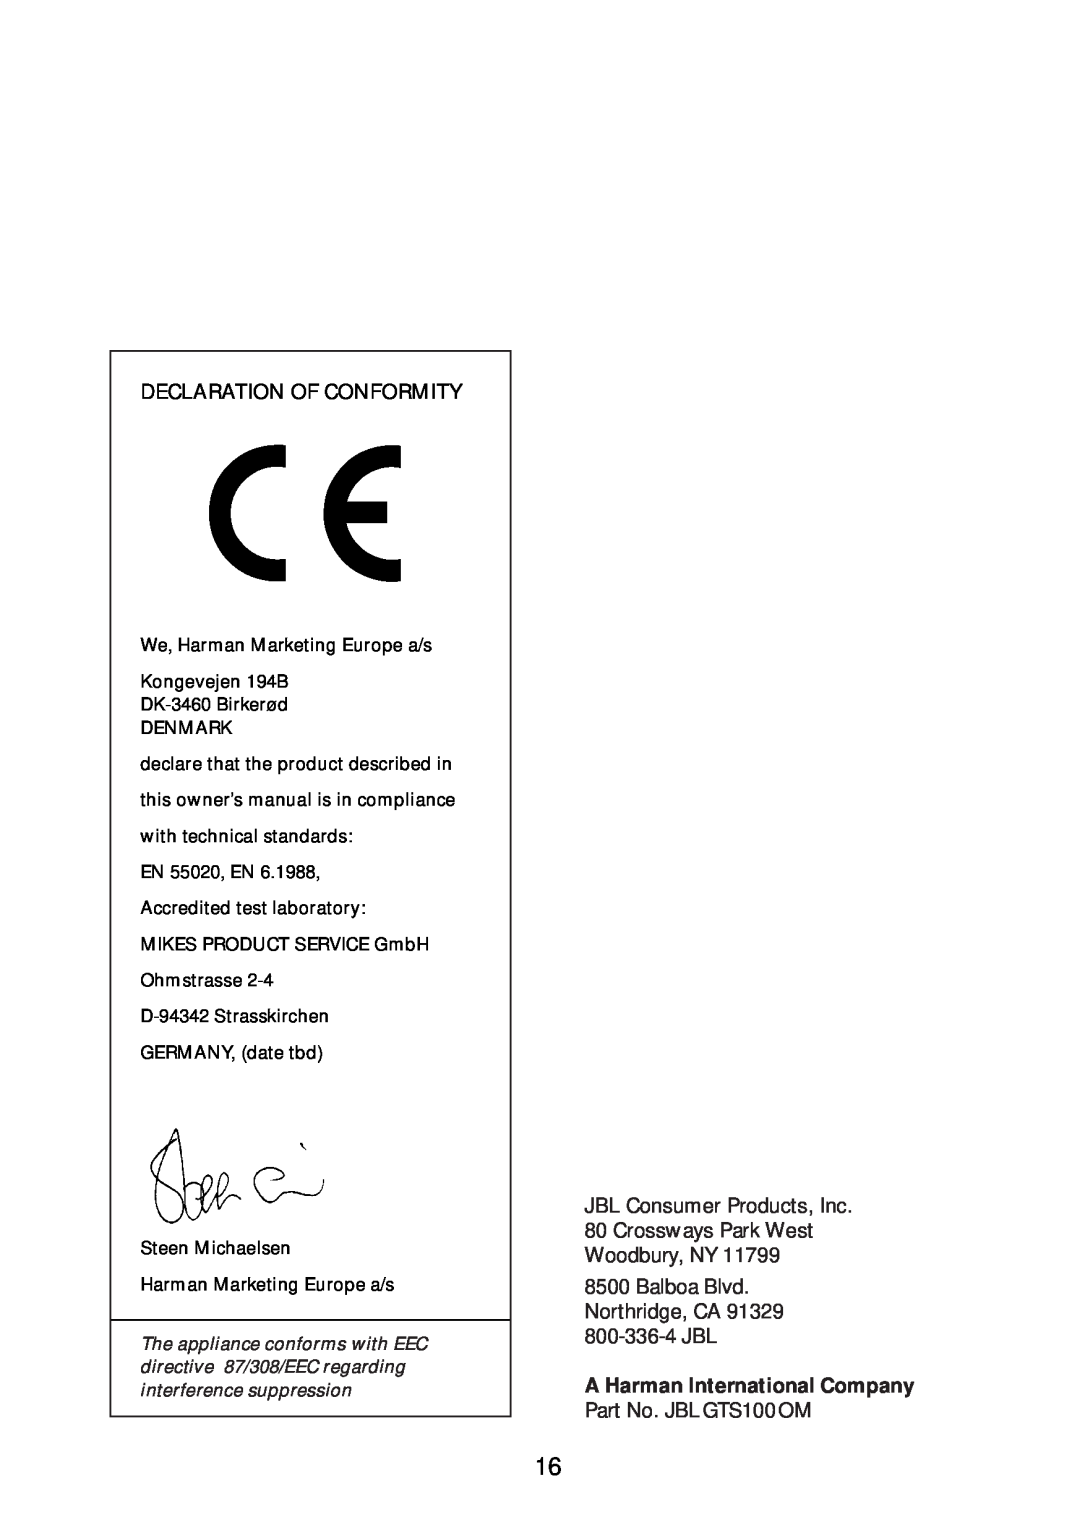 JBL GTS300, GTS600 manual Declaration Of Conformity, JBL Consumer Products, Inc 80 Crossways Park West, 800-336-4JBL 